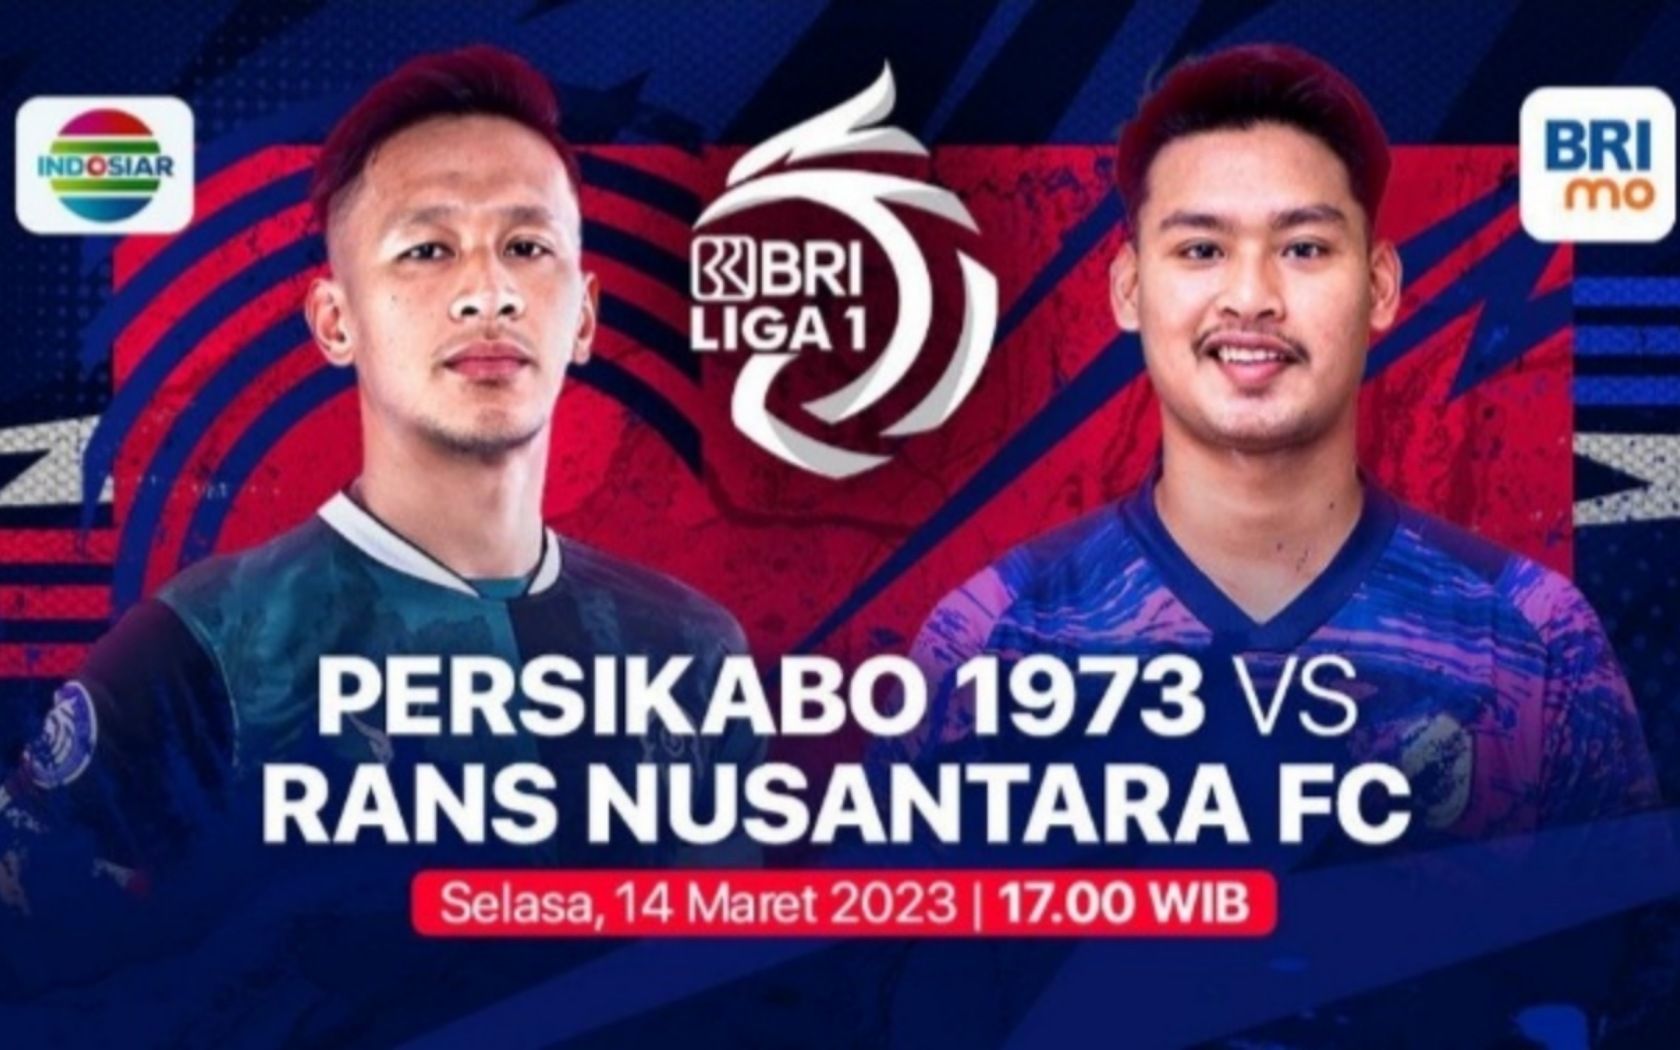 Prediksi formasi susunan pemain Persikabo 1973 vs RANS Nusantara pertandingan BRI Liga 1 hari ini